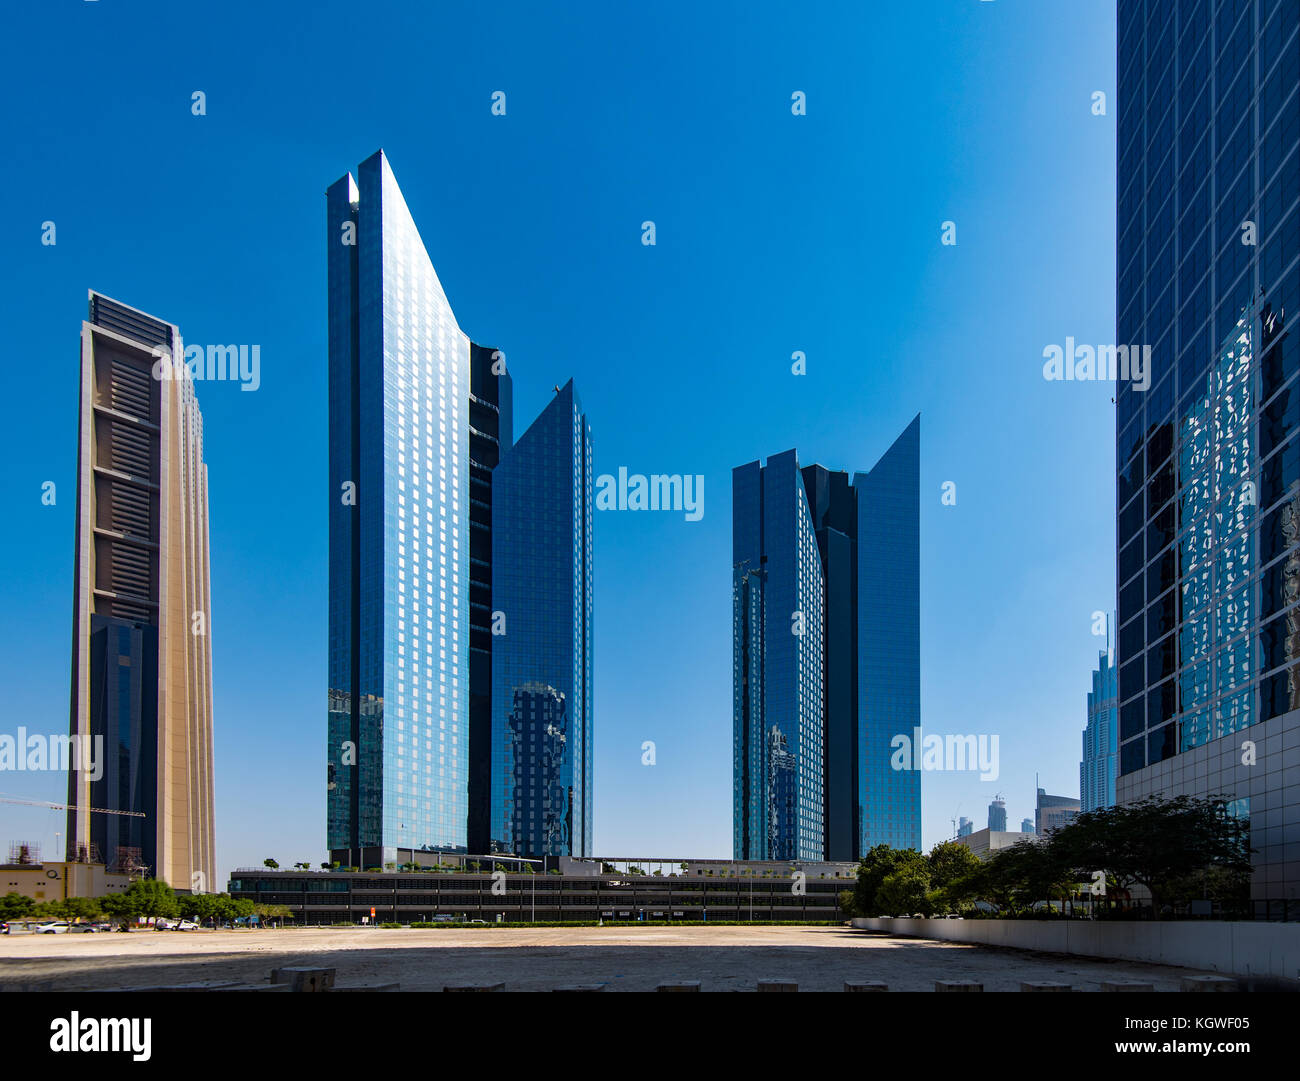 Dubai, Vae - 29 Okt 2017: Central Park Towers im difc, Dubai ist der Index der Turm kann auch auf der rechten Seite gesehen werden, Stockfoto